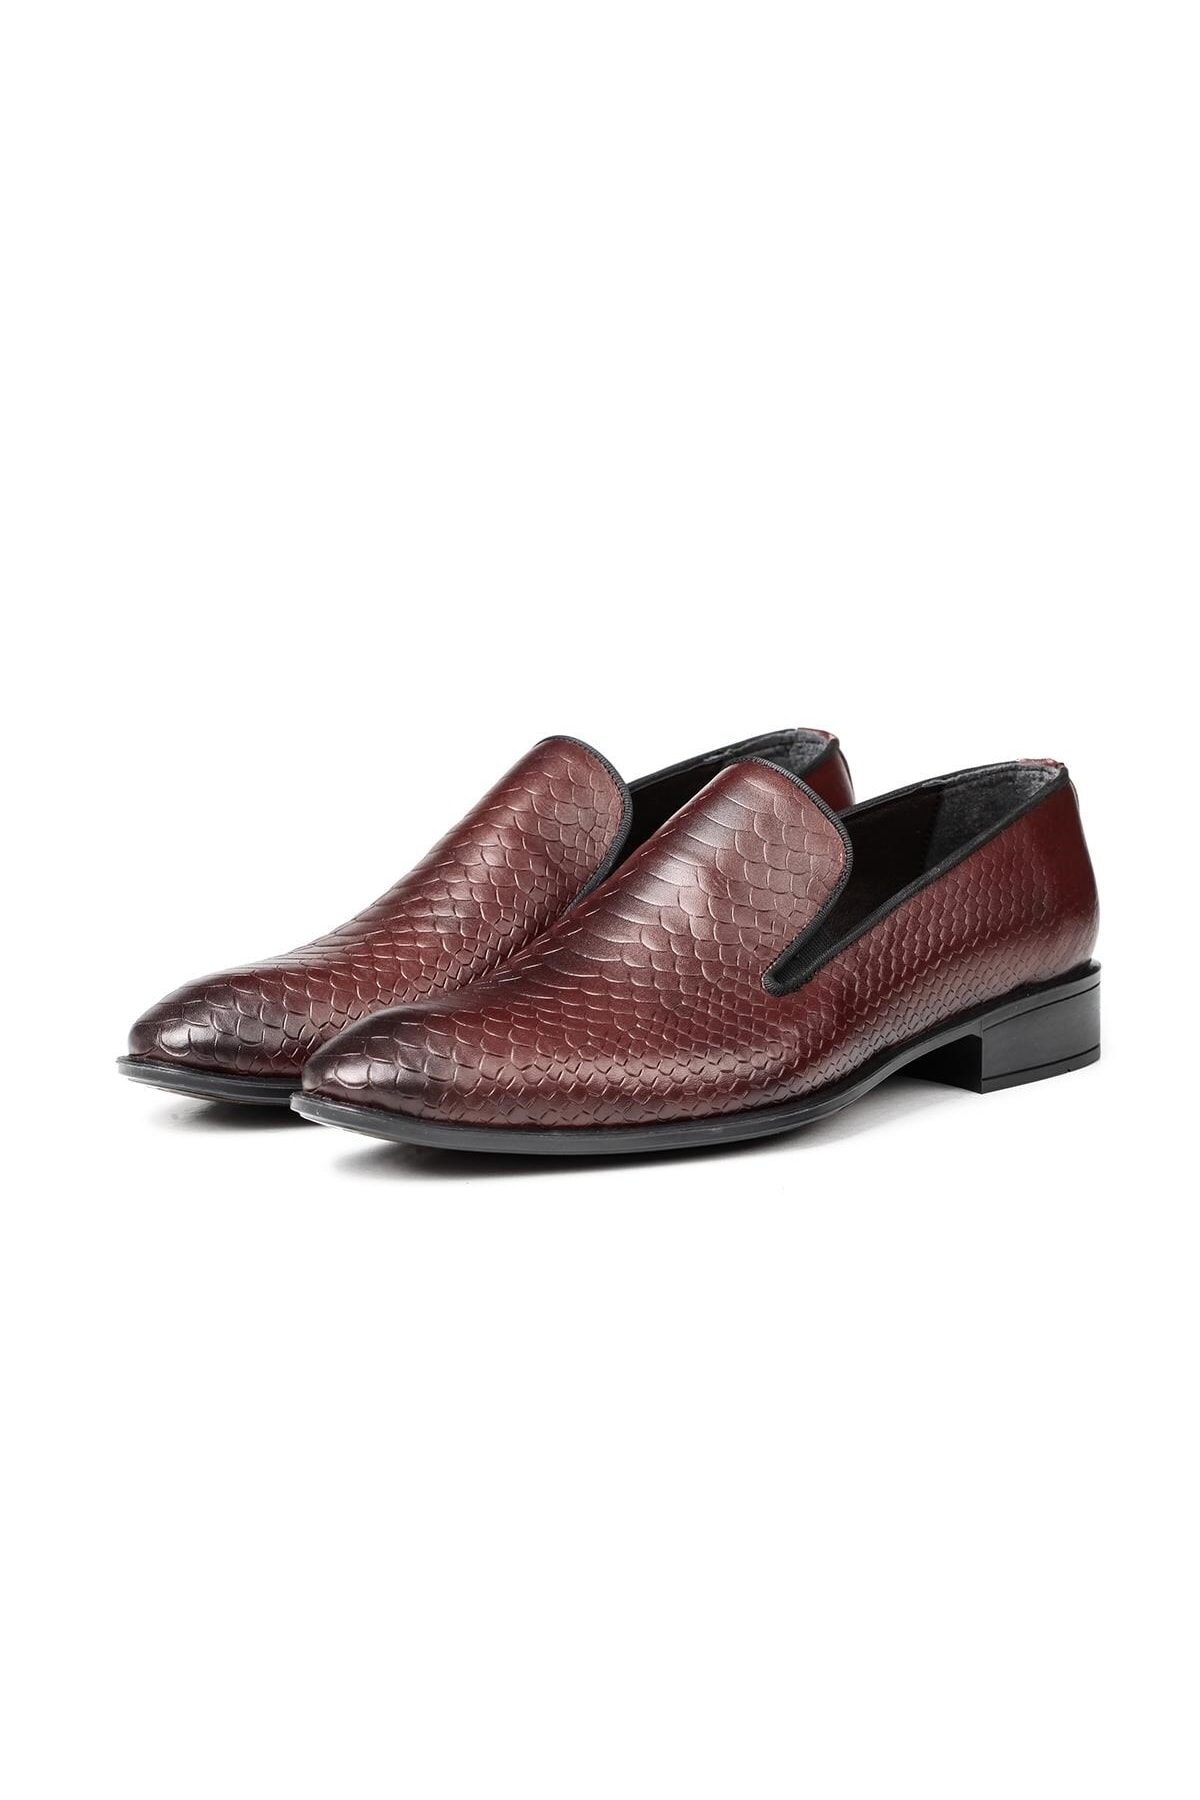 Levně Ducavelli Alligator Genuine Leather Men's Classic Shoes, Loafers Classic Shoes, Loafers.